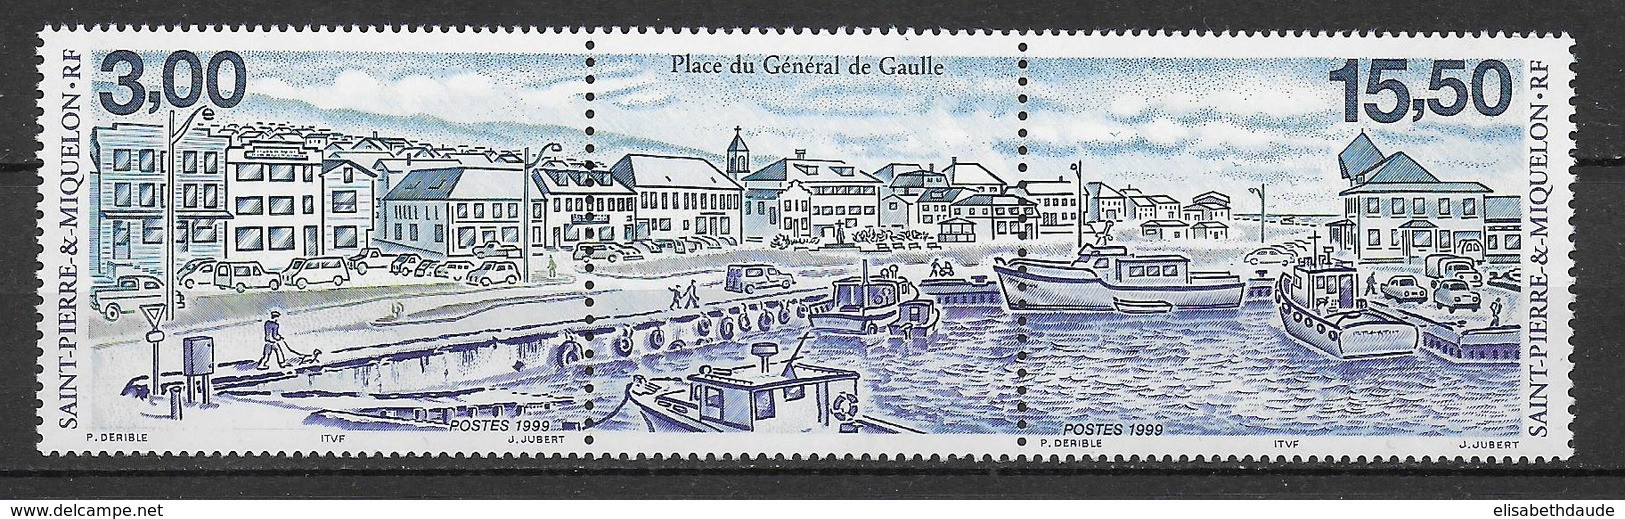 SPM - 1999 - LIVRAISON GRATUITE A PARTIR DE 5 EUR D'ACHAT - PLACE GENERAL DE GAULLE - TRIPTYQUE YVERT N°702A **  MNH - - Unused Stamps